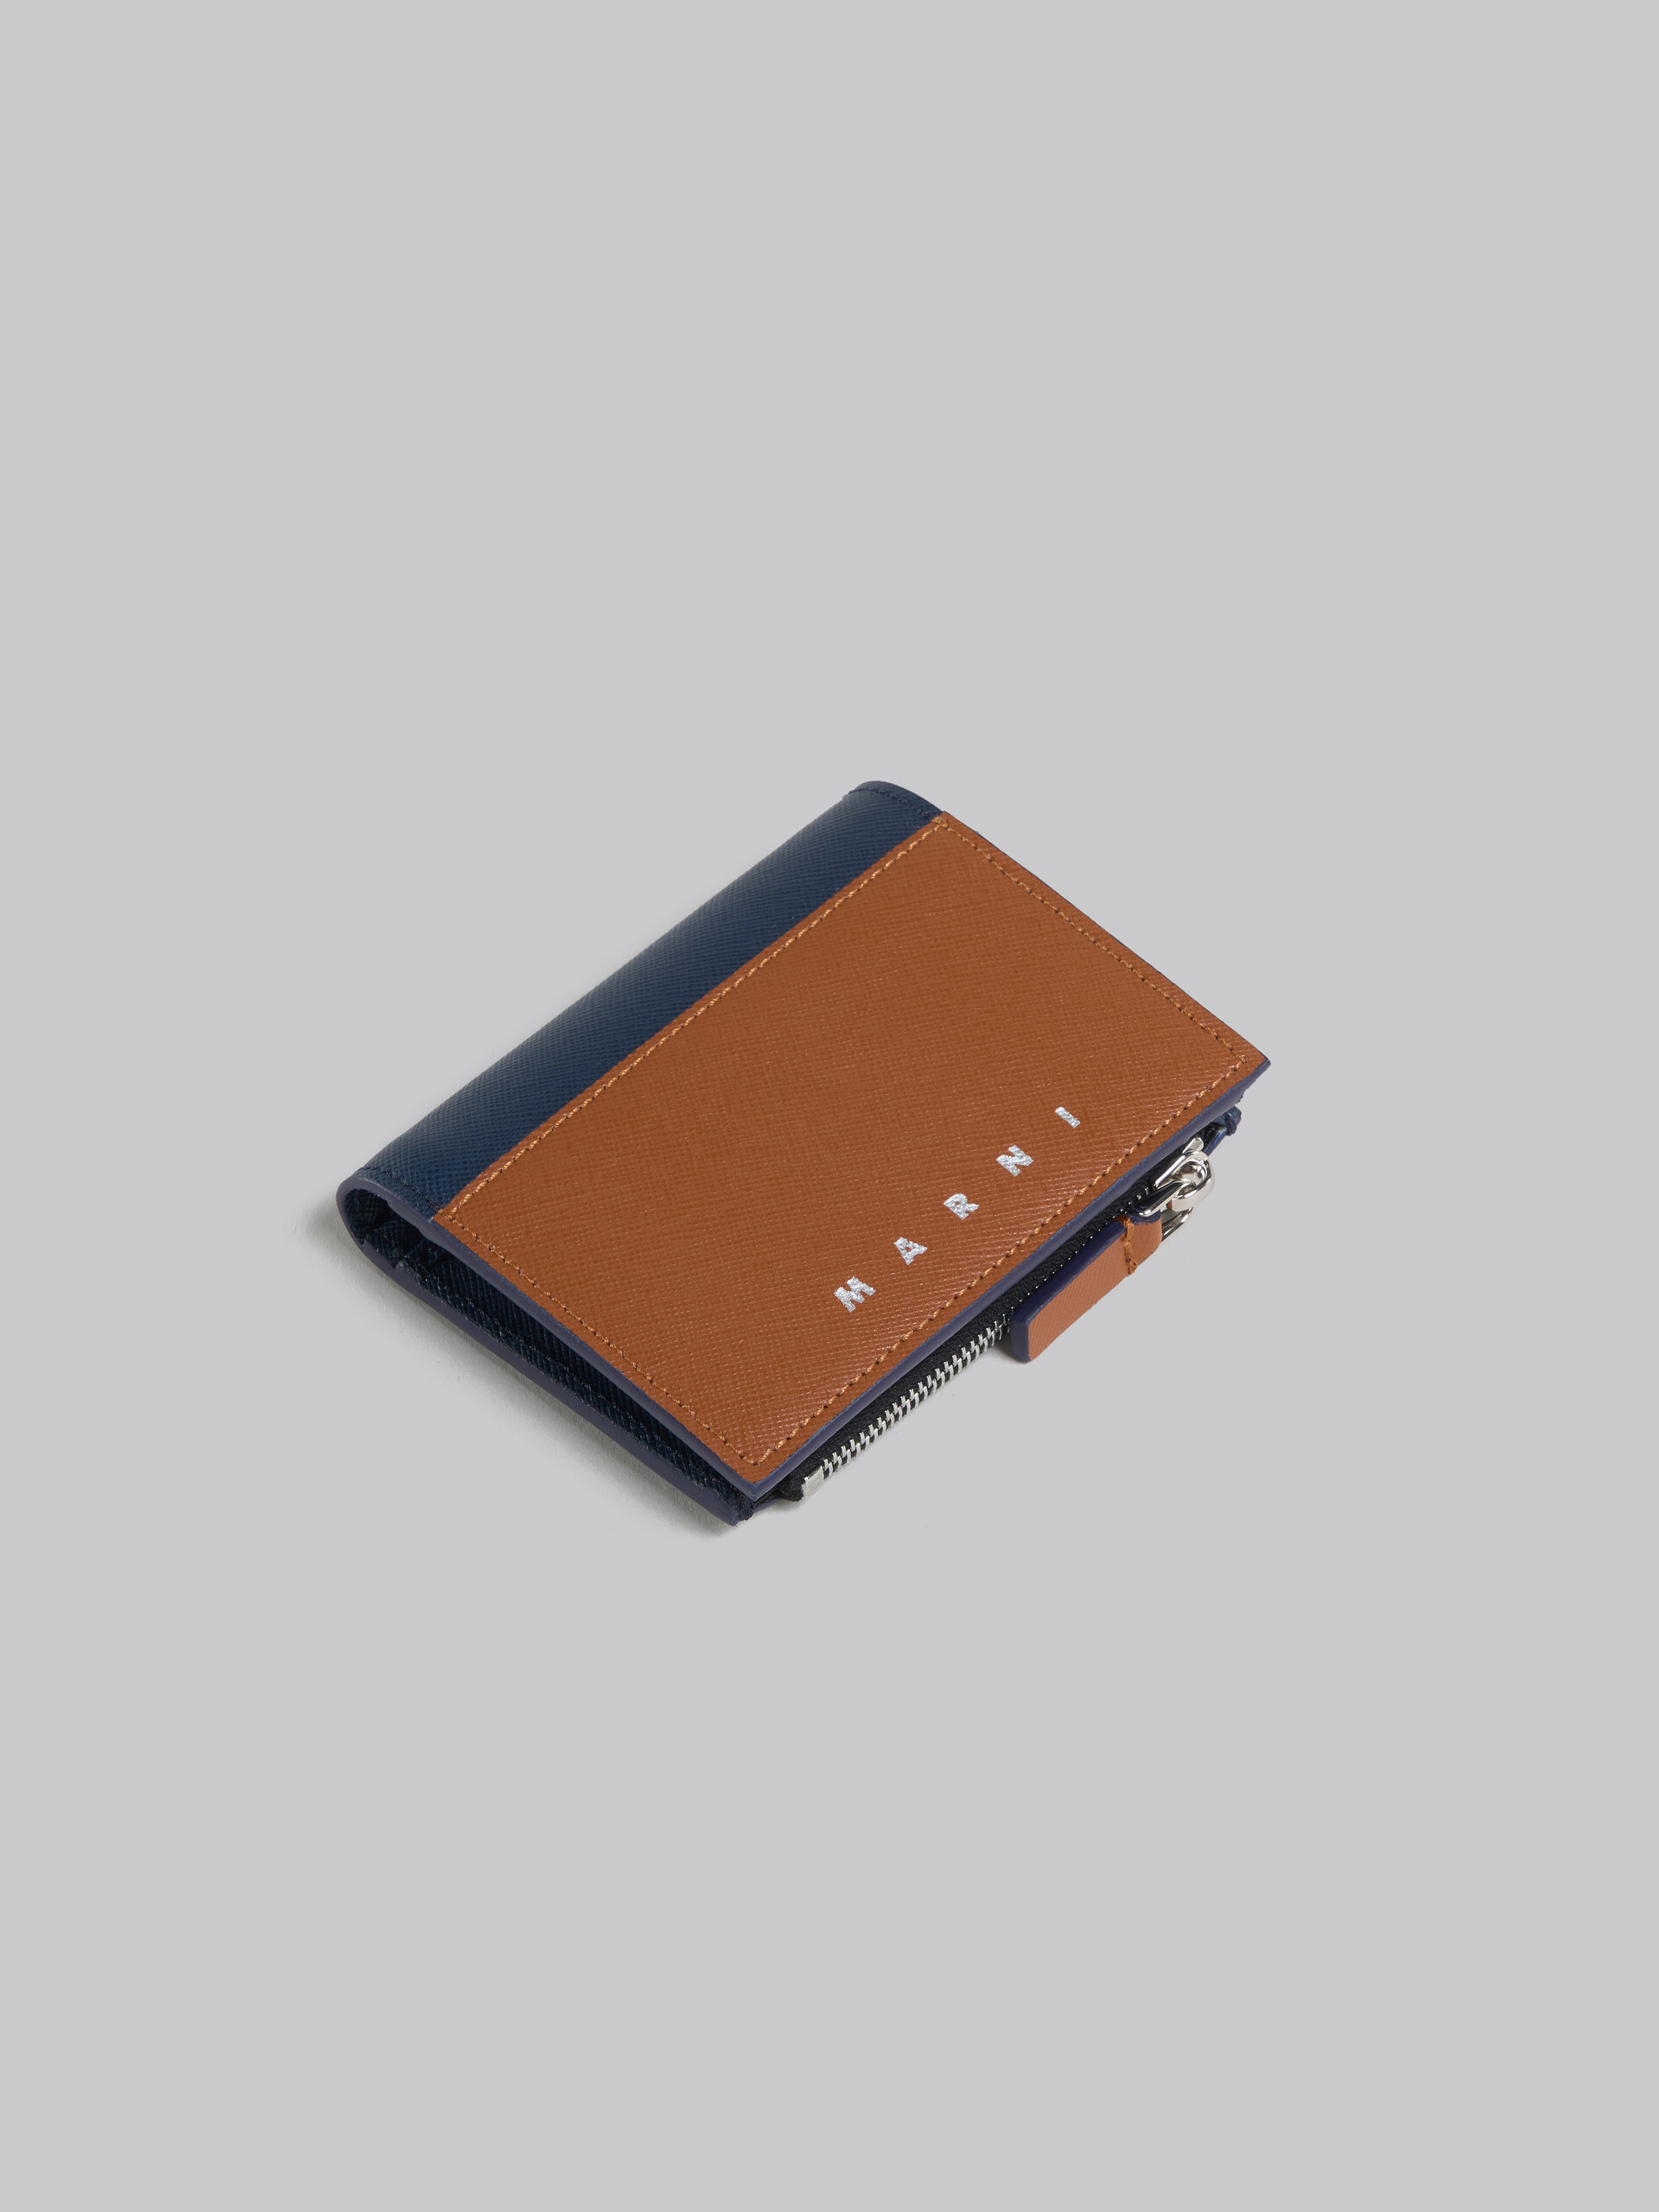 クリーム ディープブルー サフィアーノレザー製 二つ折りウォレット 、ファスナー式ポケット - 財布 - Image 5